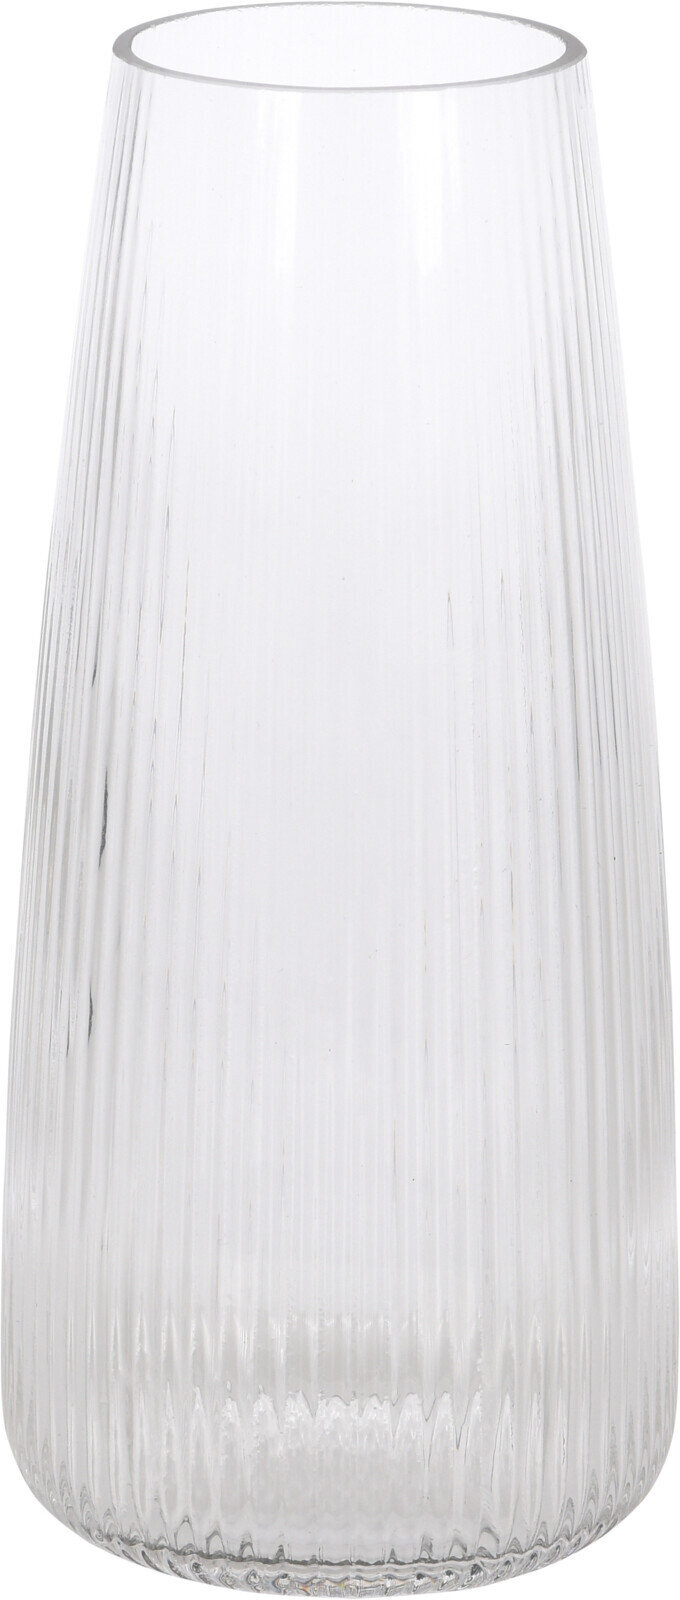 Stiklinė vaza, 21 cm